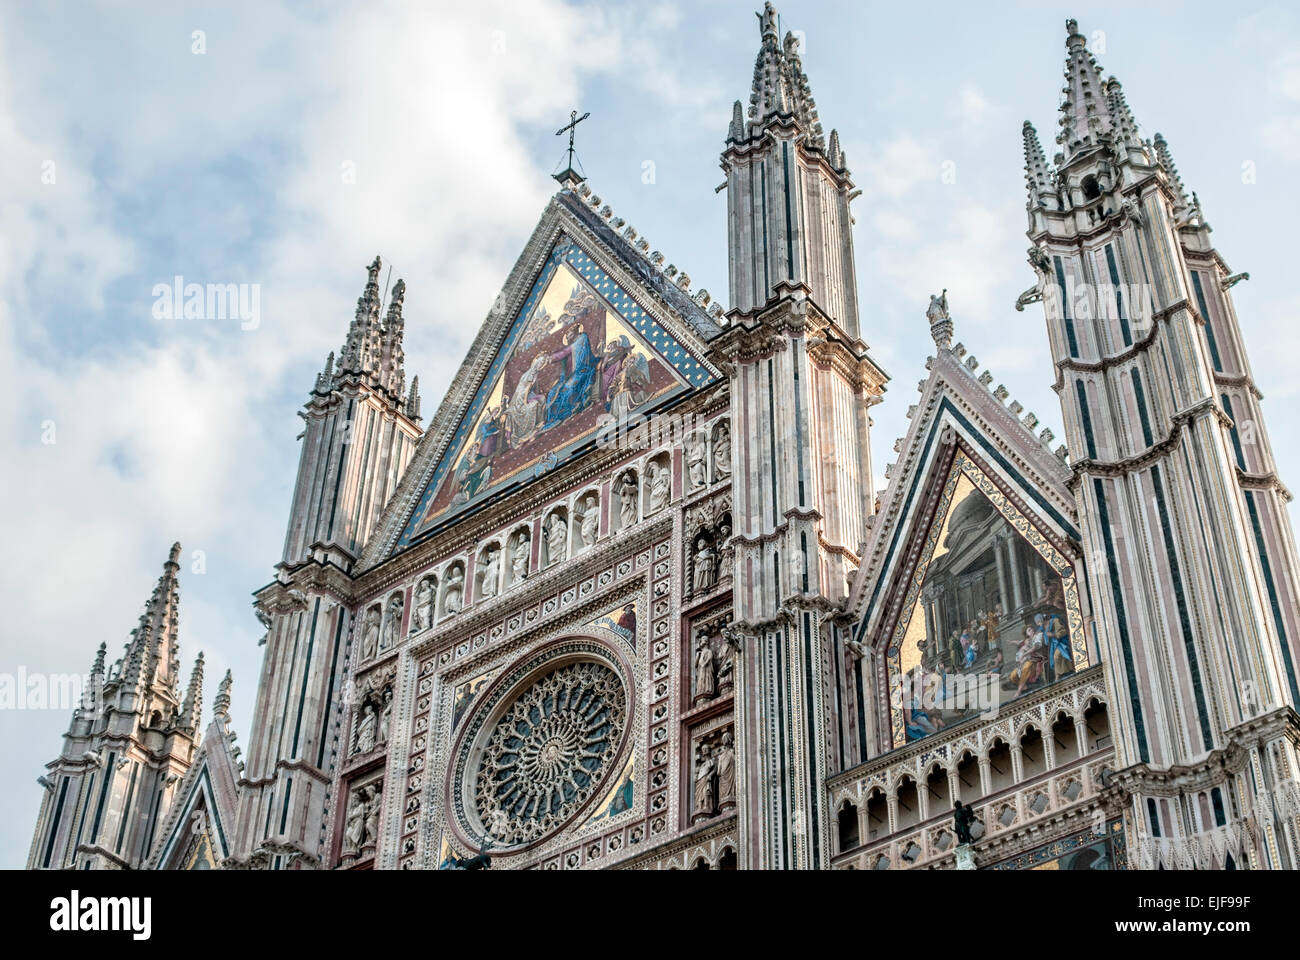 Détail architectural à la Cathédrale d'Orvieto (Duomo di Orvieto) est un grand 14e siècle cathédrale catholique romaine, Italie Banque D'Images